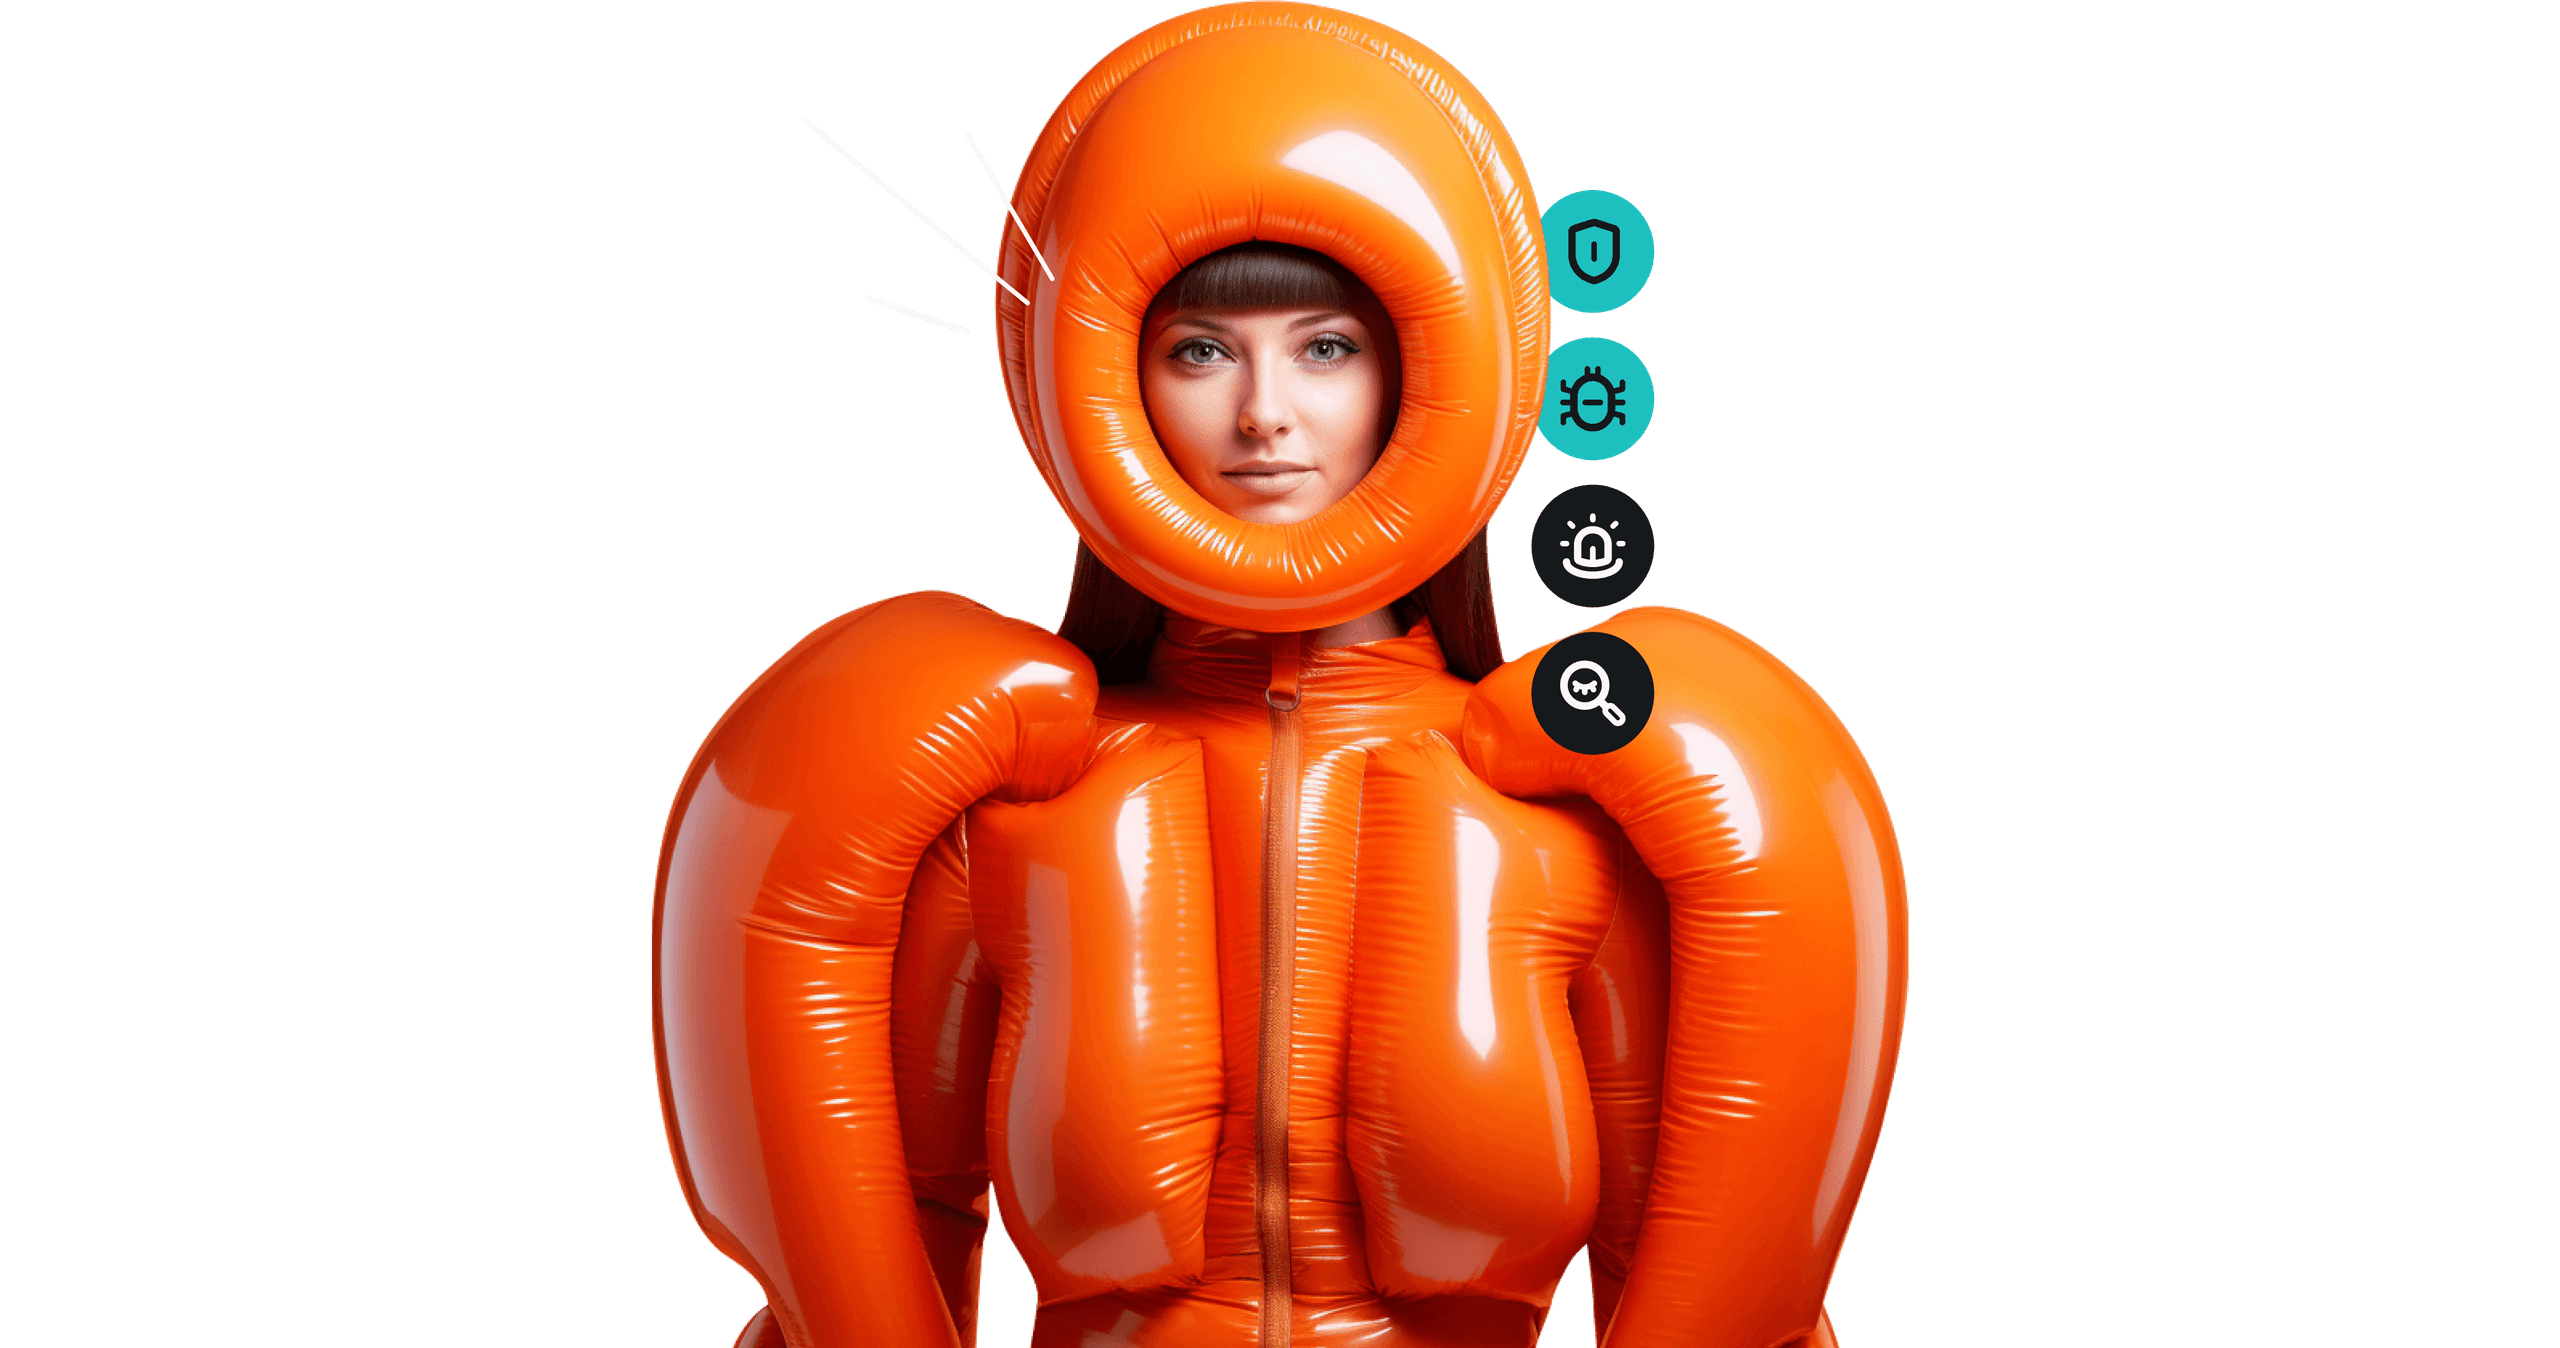 オレンジ色の風船スーツを着て風船ヘルメットをかぶった女性。